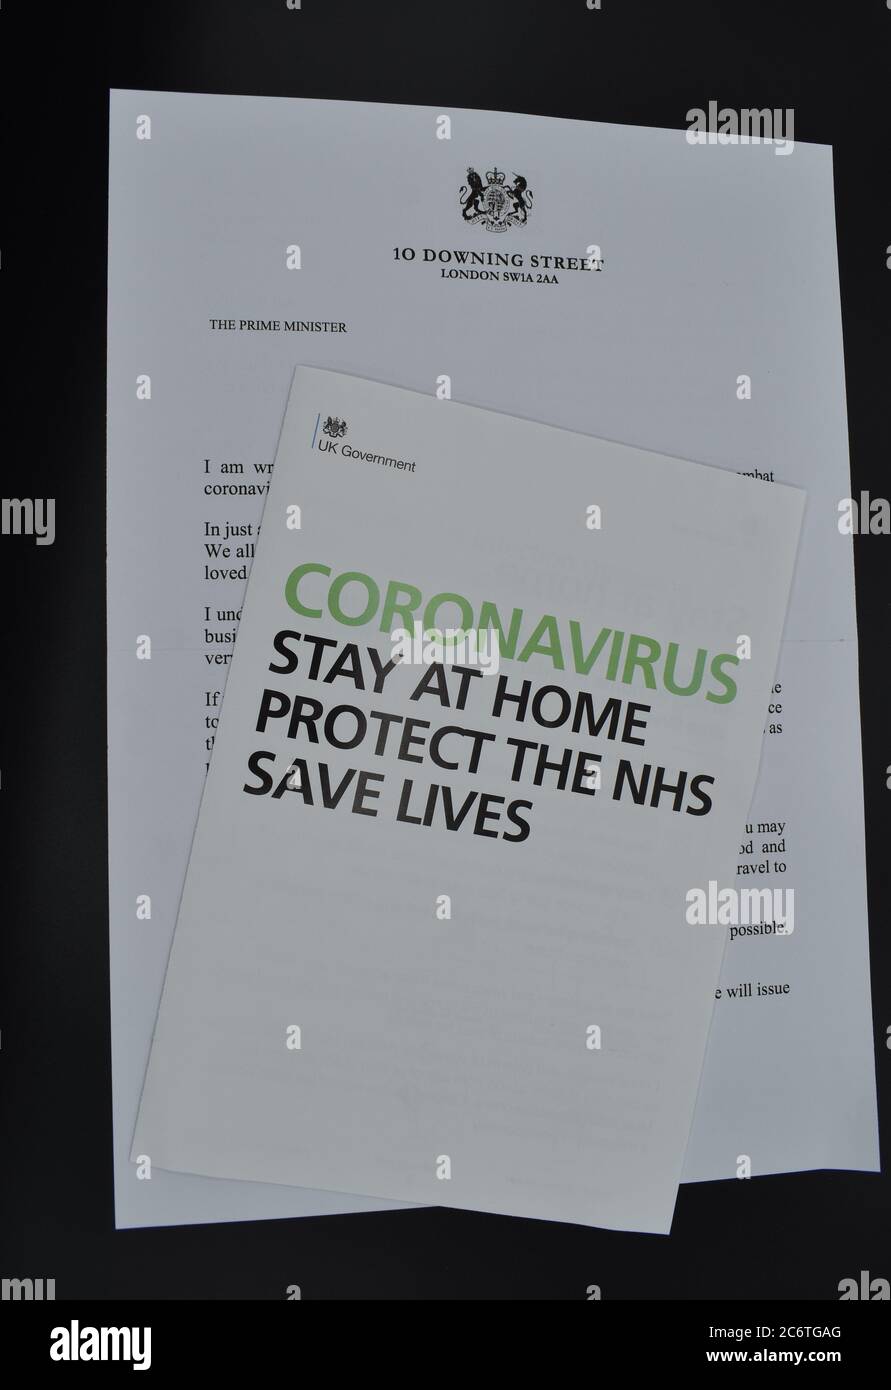 El prospecto y la carta de Coronavirus de 10 Downing Street se distribuyeron a las casas del Reino Unido al principio del cierre para Covid-19. Foto de stock